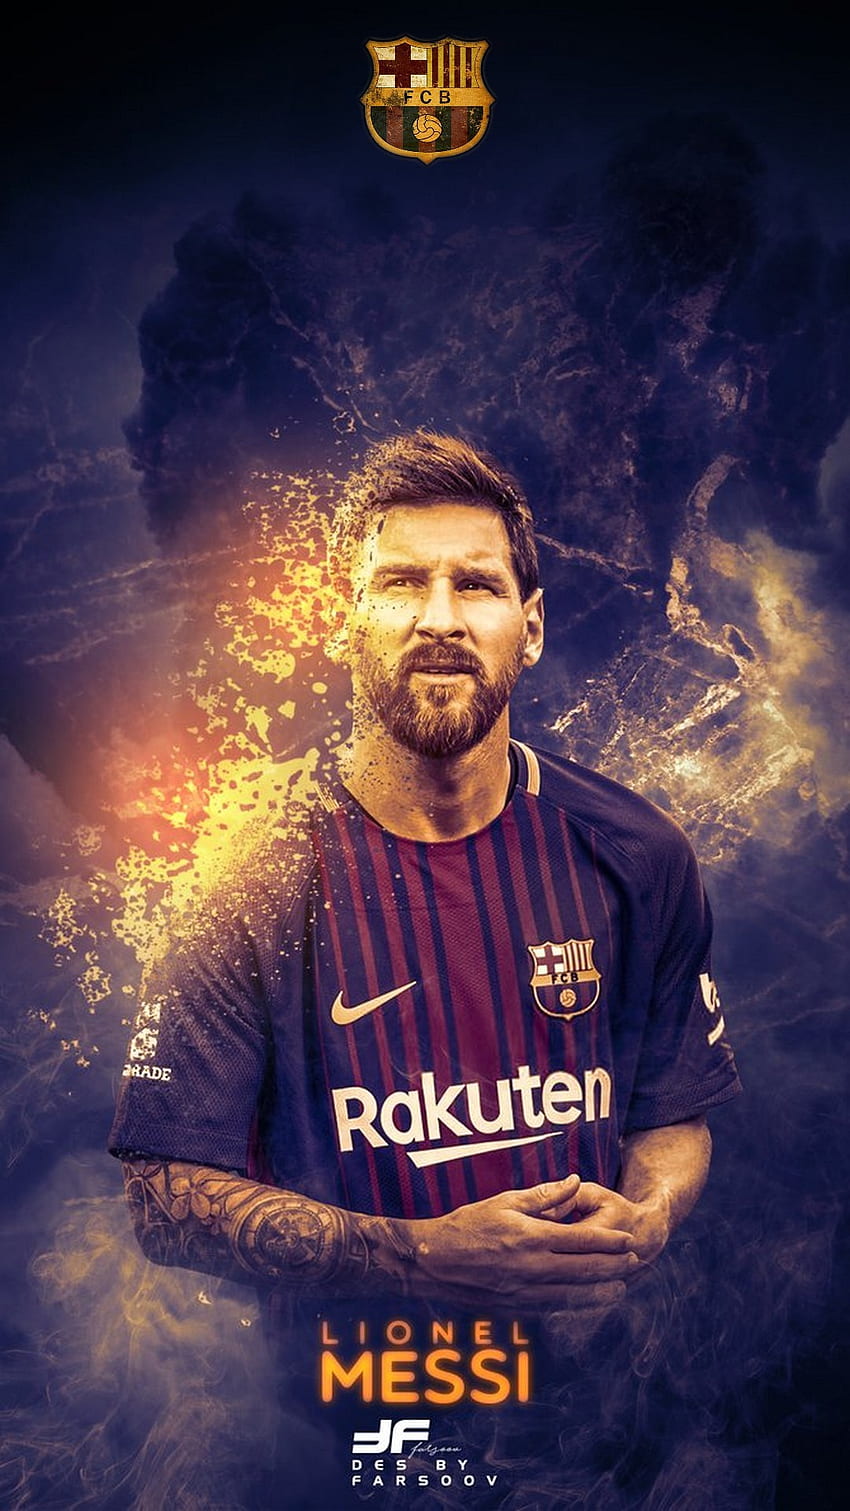 Lionel Messi - một trong những cầu thủ bóng đá vĩ đại nhất mọi thời đại! Không chỉ là một nhân tố then chốt của bóng đá Barcelona, ​​Messi còn là biểu tượng của tất cả những người yêu thể thao trên khắp thế giới. Bộ ảnh này sẽ giúp bạn có cái nhìn toàn diện về chân sút huyền thoại này.